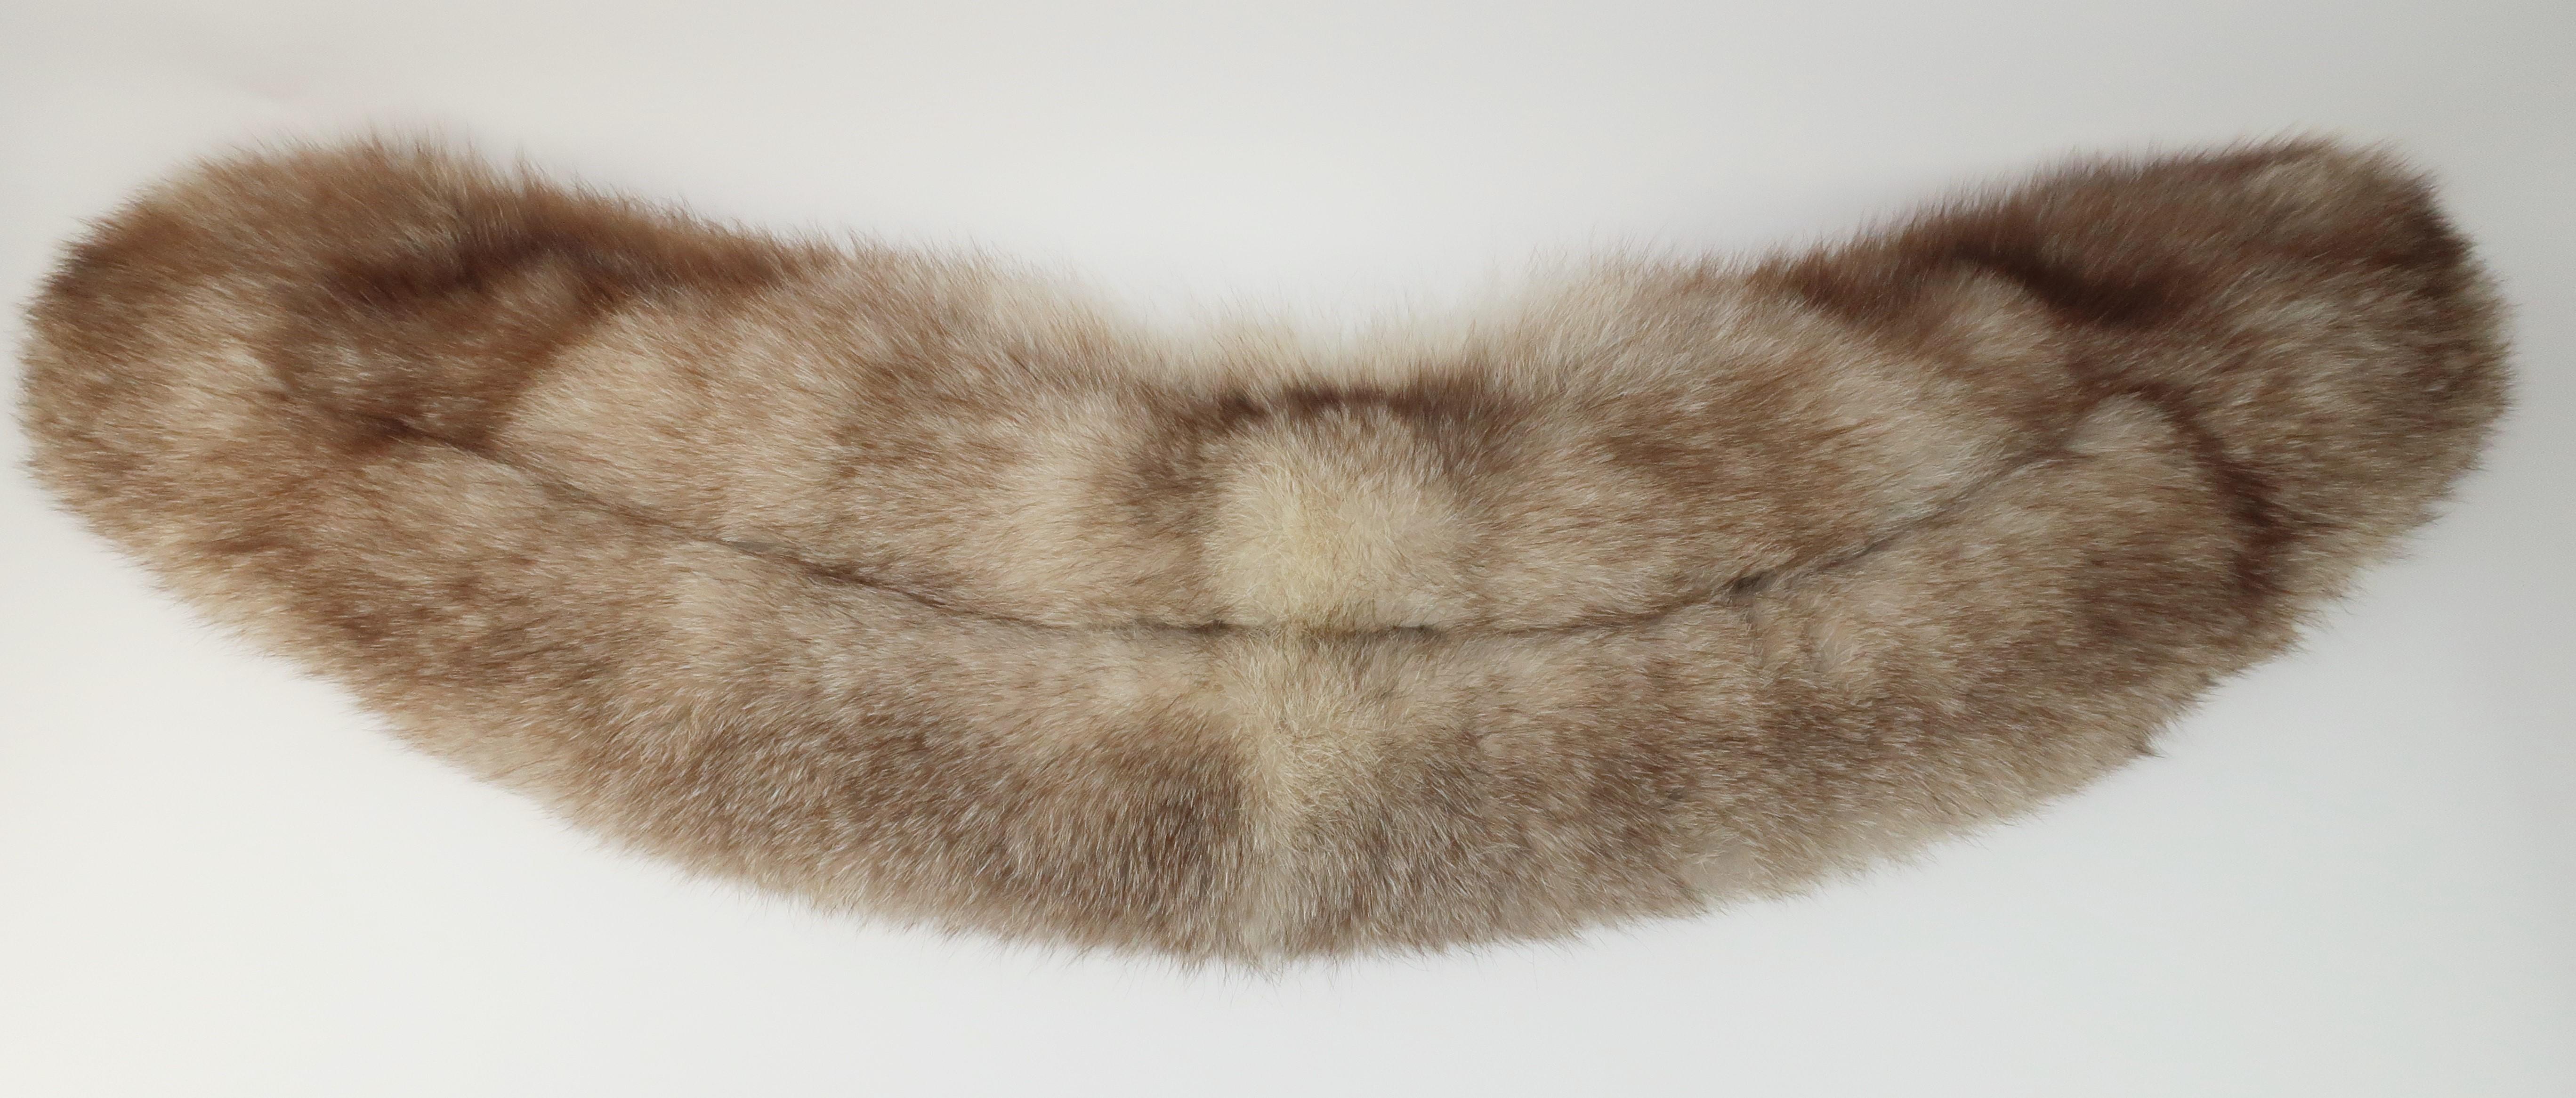 fox fur collar with head